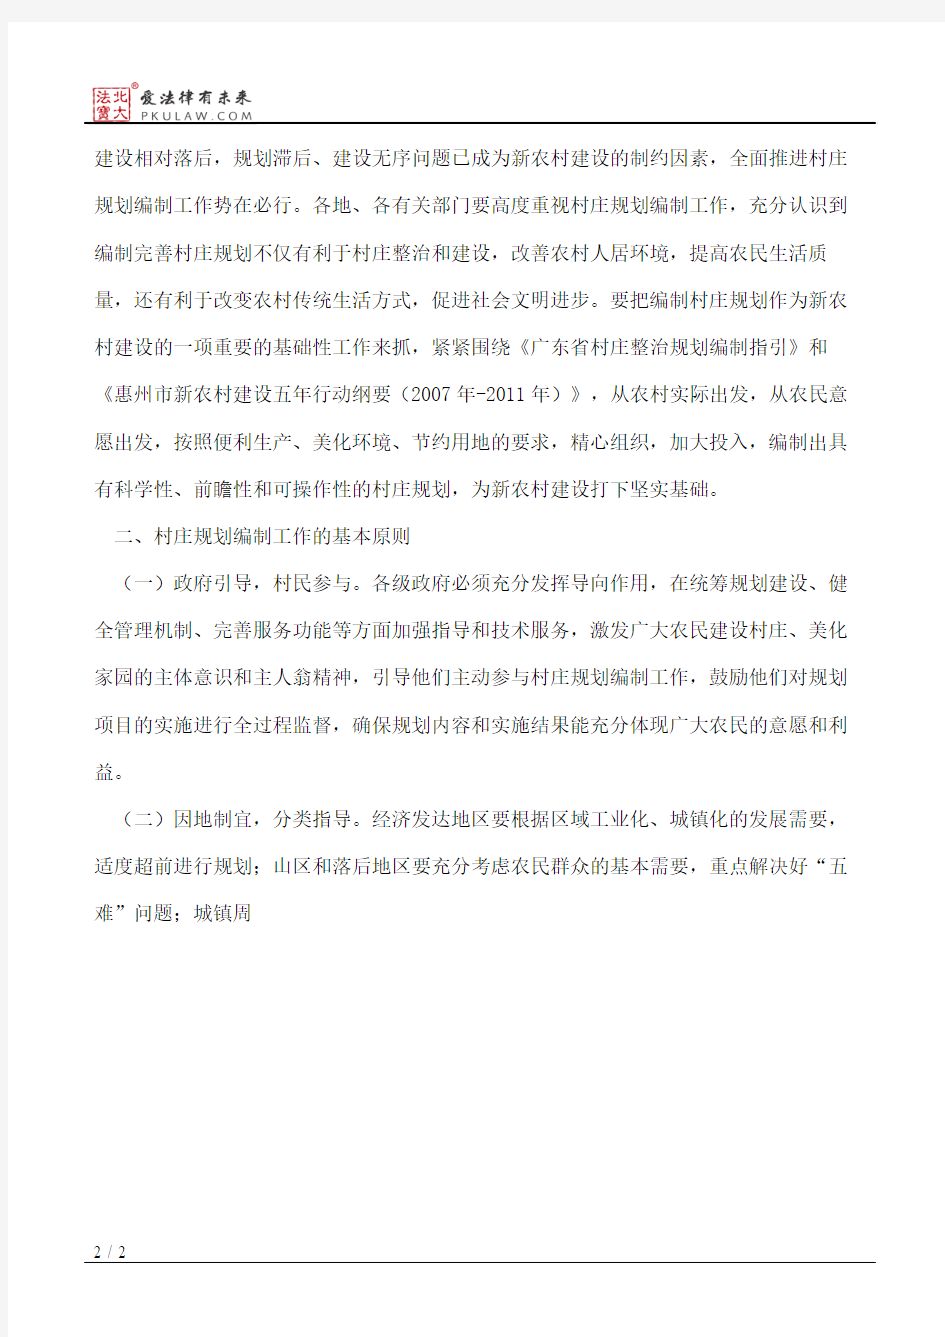 中共惠州市委办公室、惠州市人民政府办公室关于全面推进村庄规划